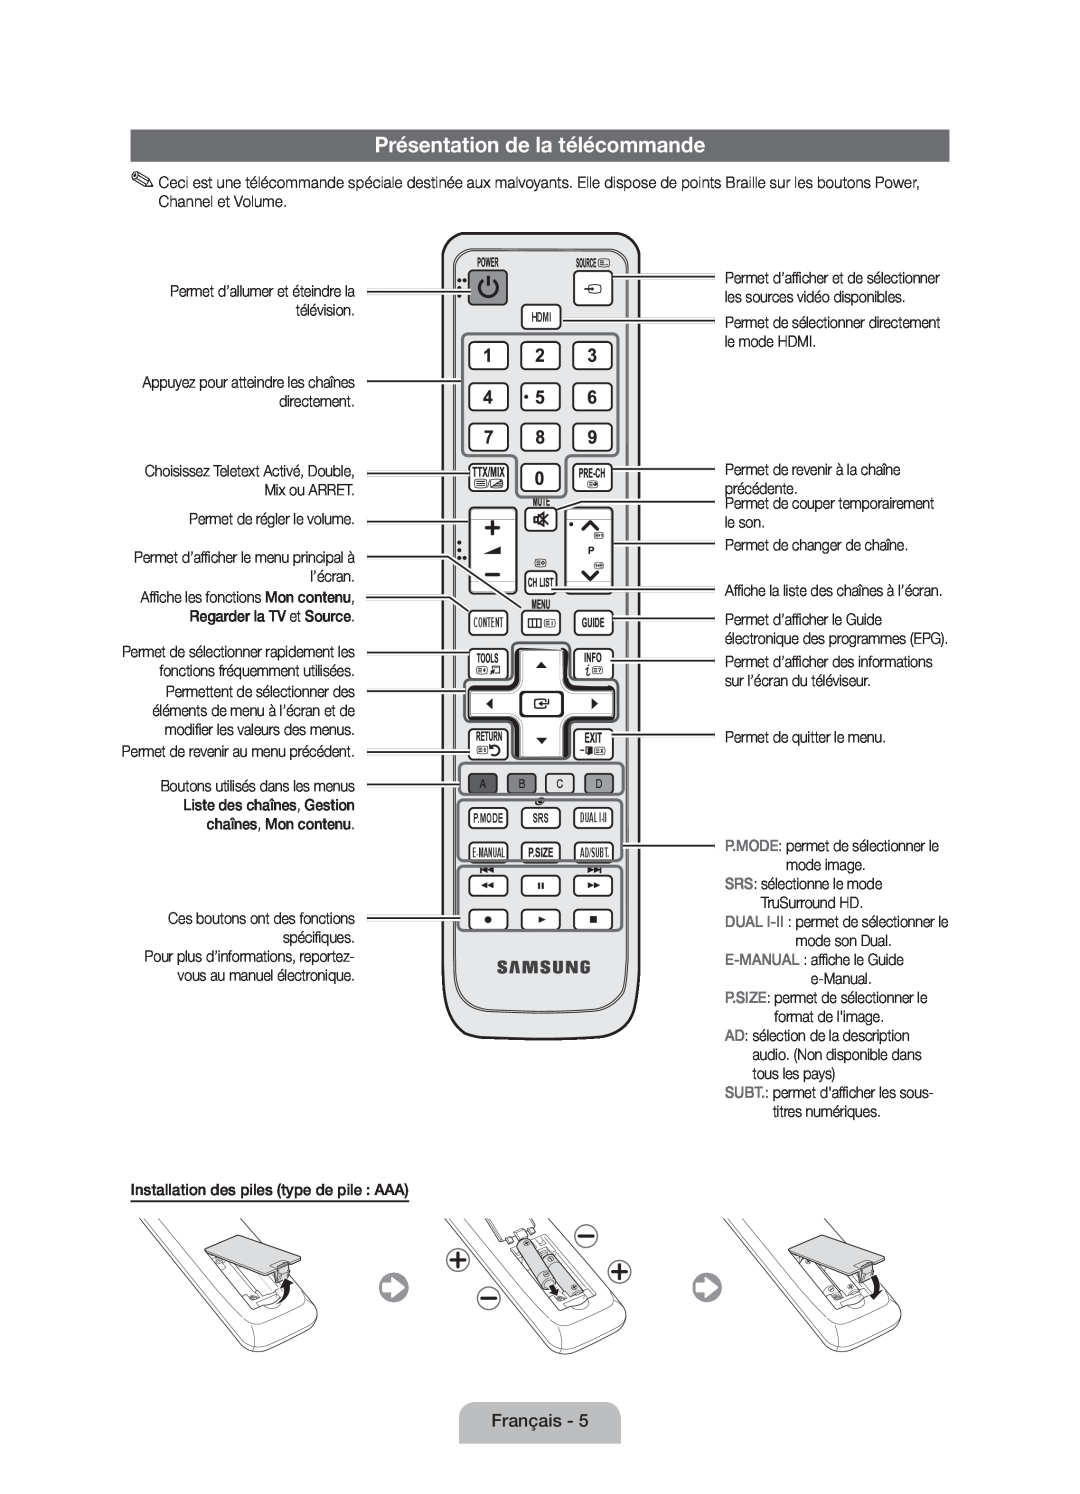 Samsung UE32D4010NWXZT, UE32D4010NWXZG, UE32D4000NWXZG, UE32D4000NWXTK, UE32D4010NWXXN manual Présentation de la télécommande 